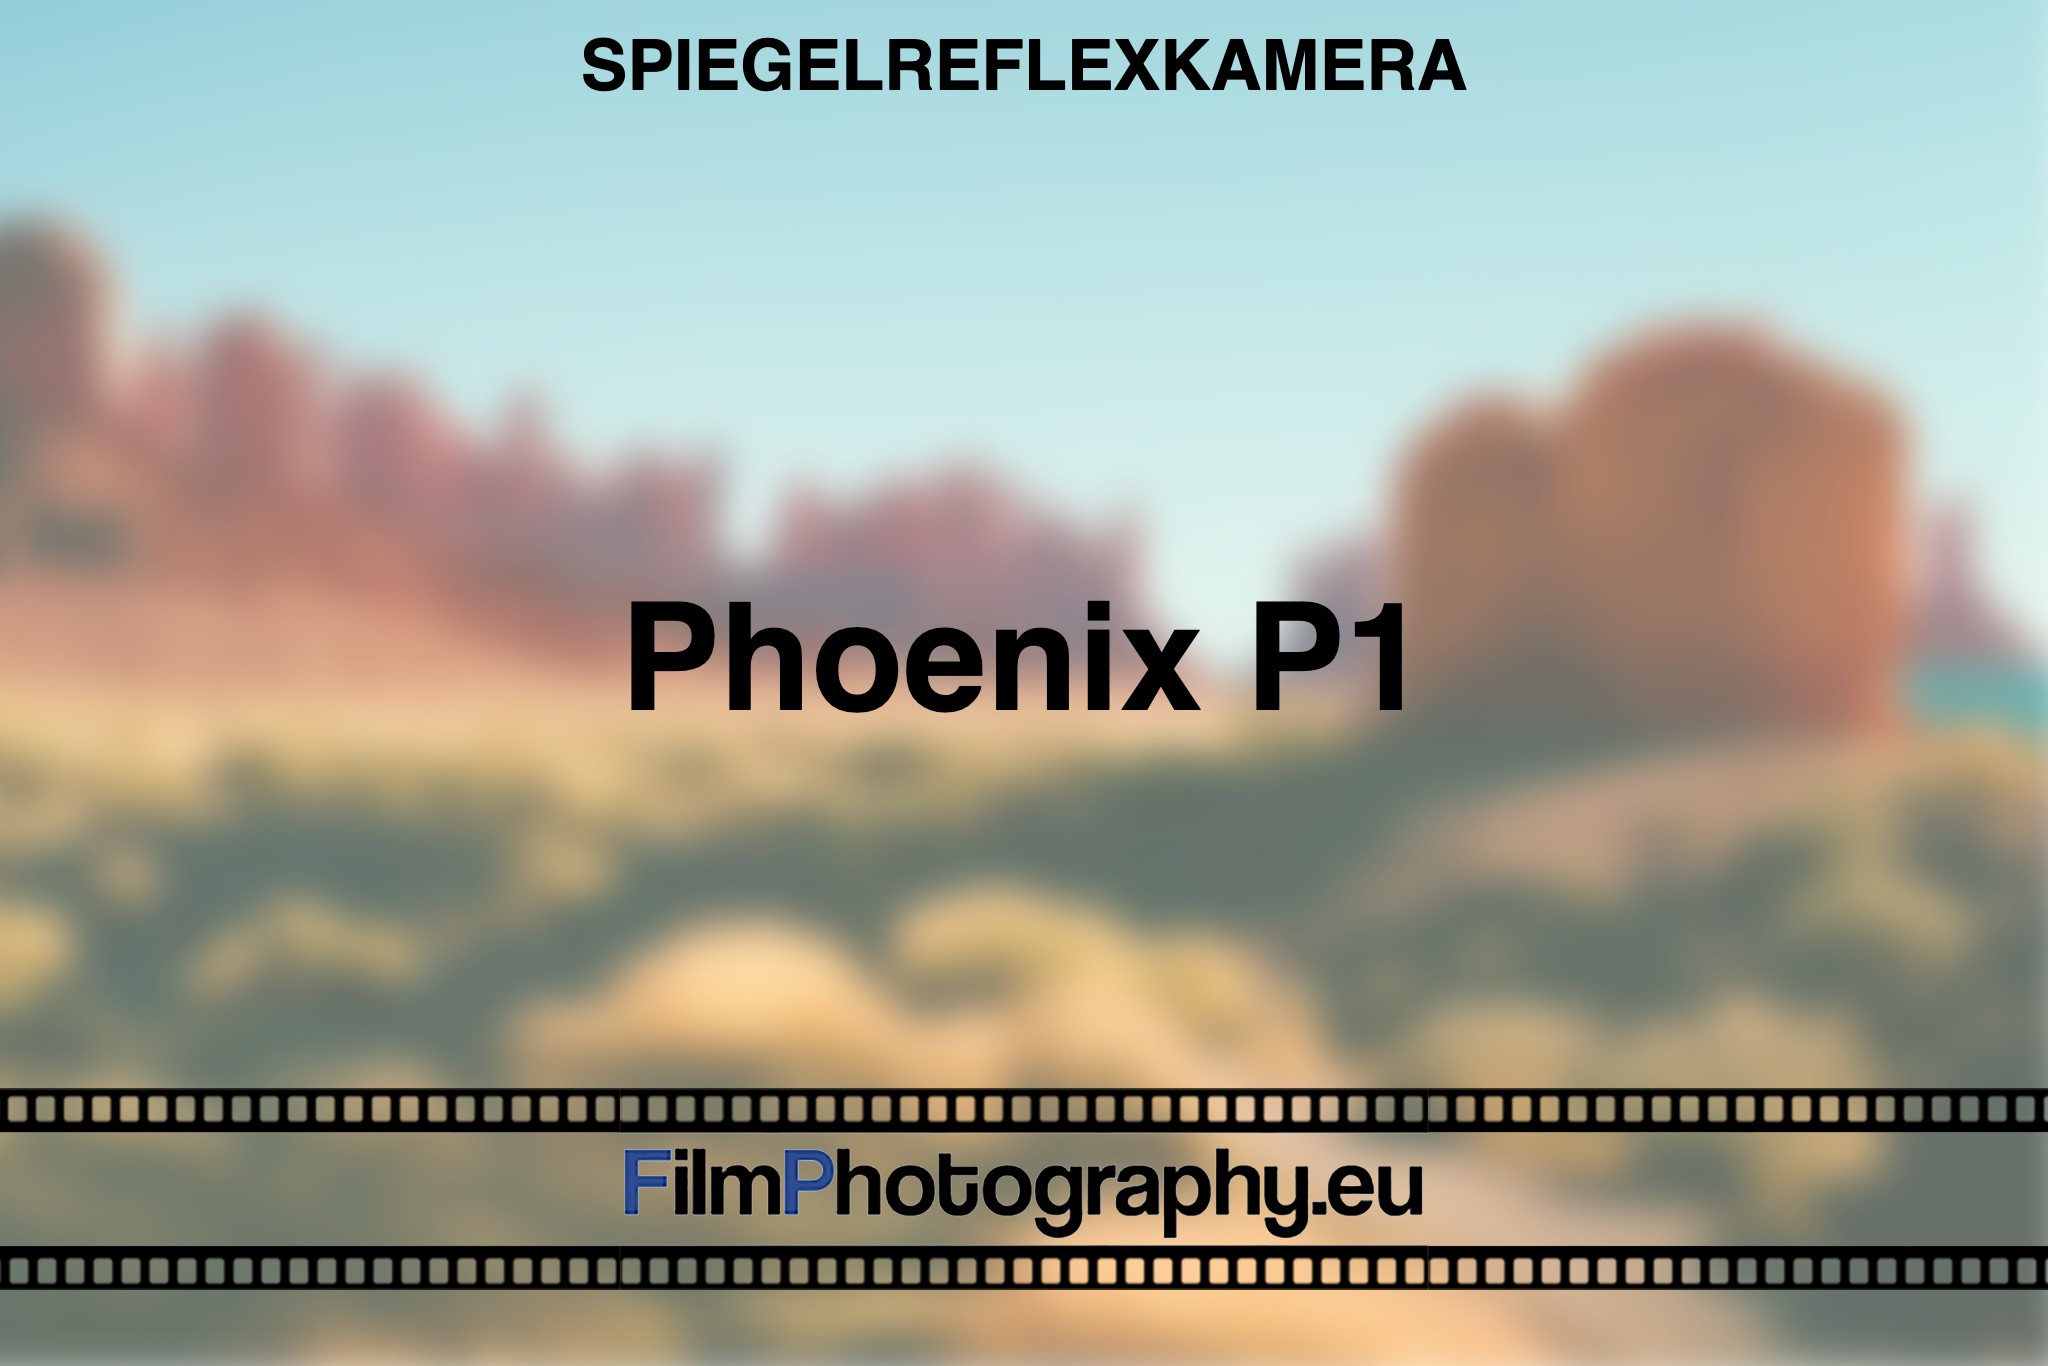 phoenix-p1-spiegelreflexkamera-bnv